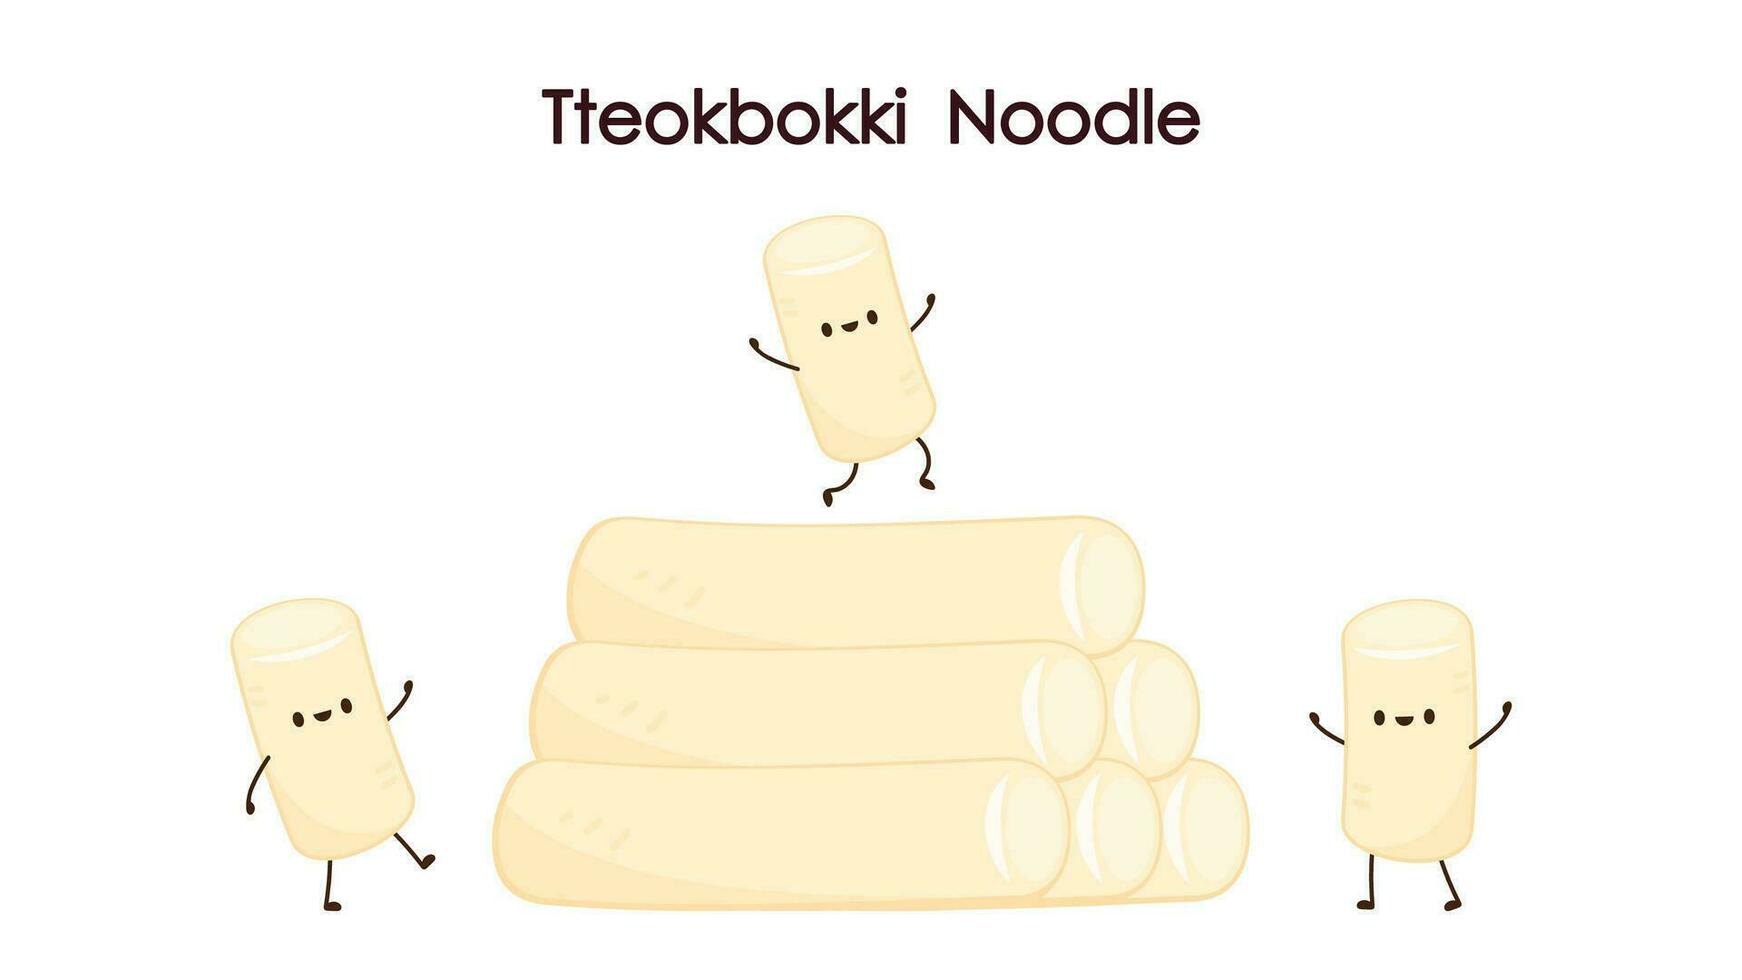 linda tteokbokki fideos dibujos animados. coreano calle alimento. sencillo vector logo embutido. tteokbokki es coreano alimento.